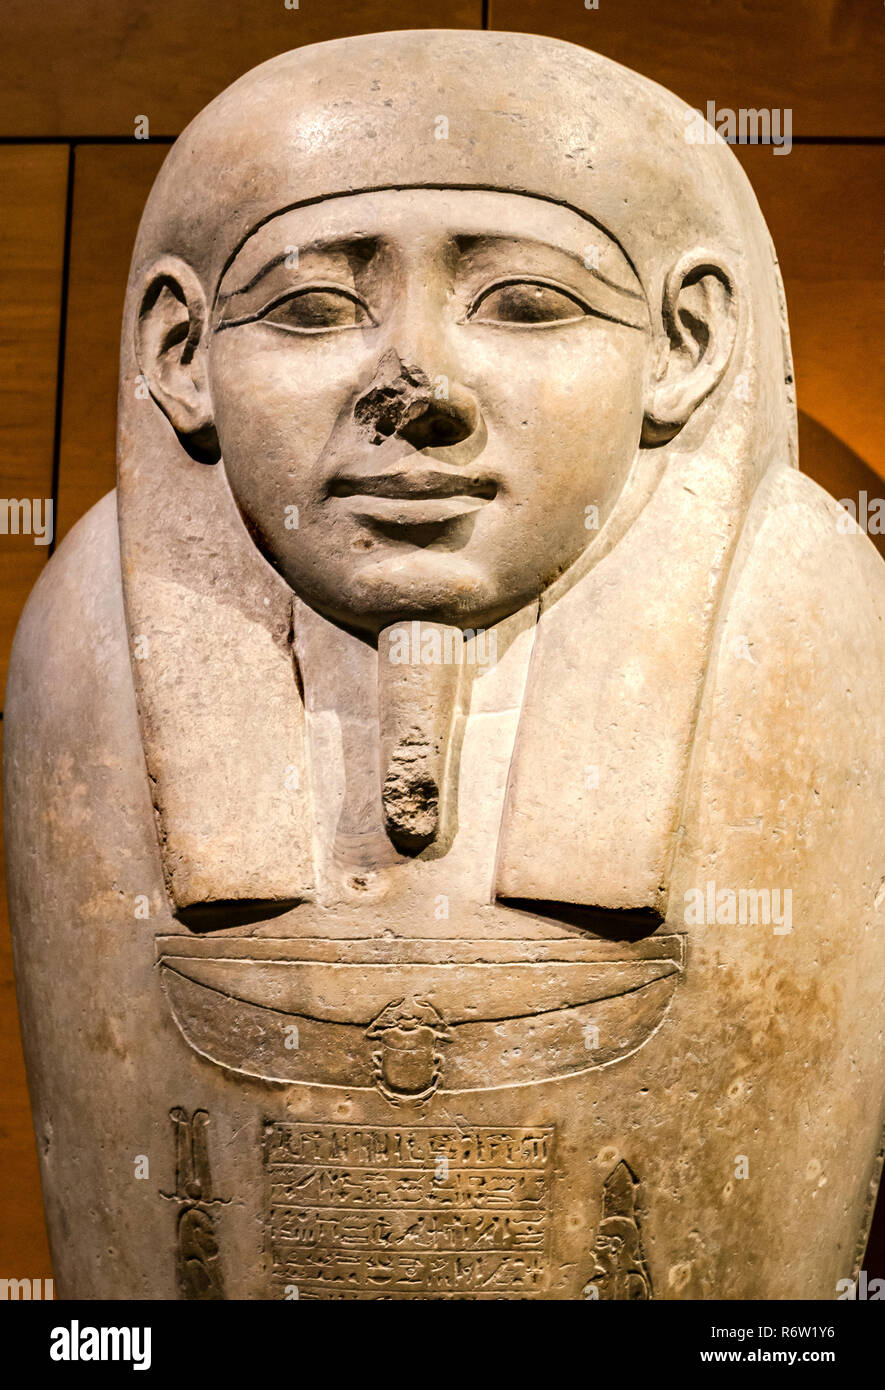 Il sarcofago di Asetirdis è visualizzato a Michael C. Carlos Museum alla Emory University, Luglio 8, 2014, ad Atlanta, Georgia. Foto Stock